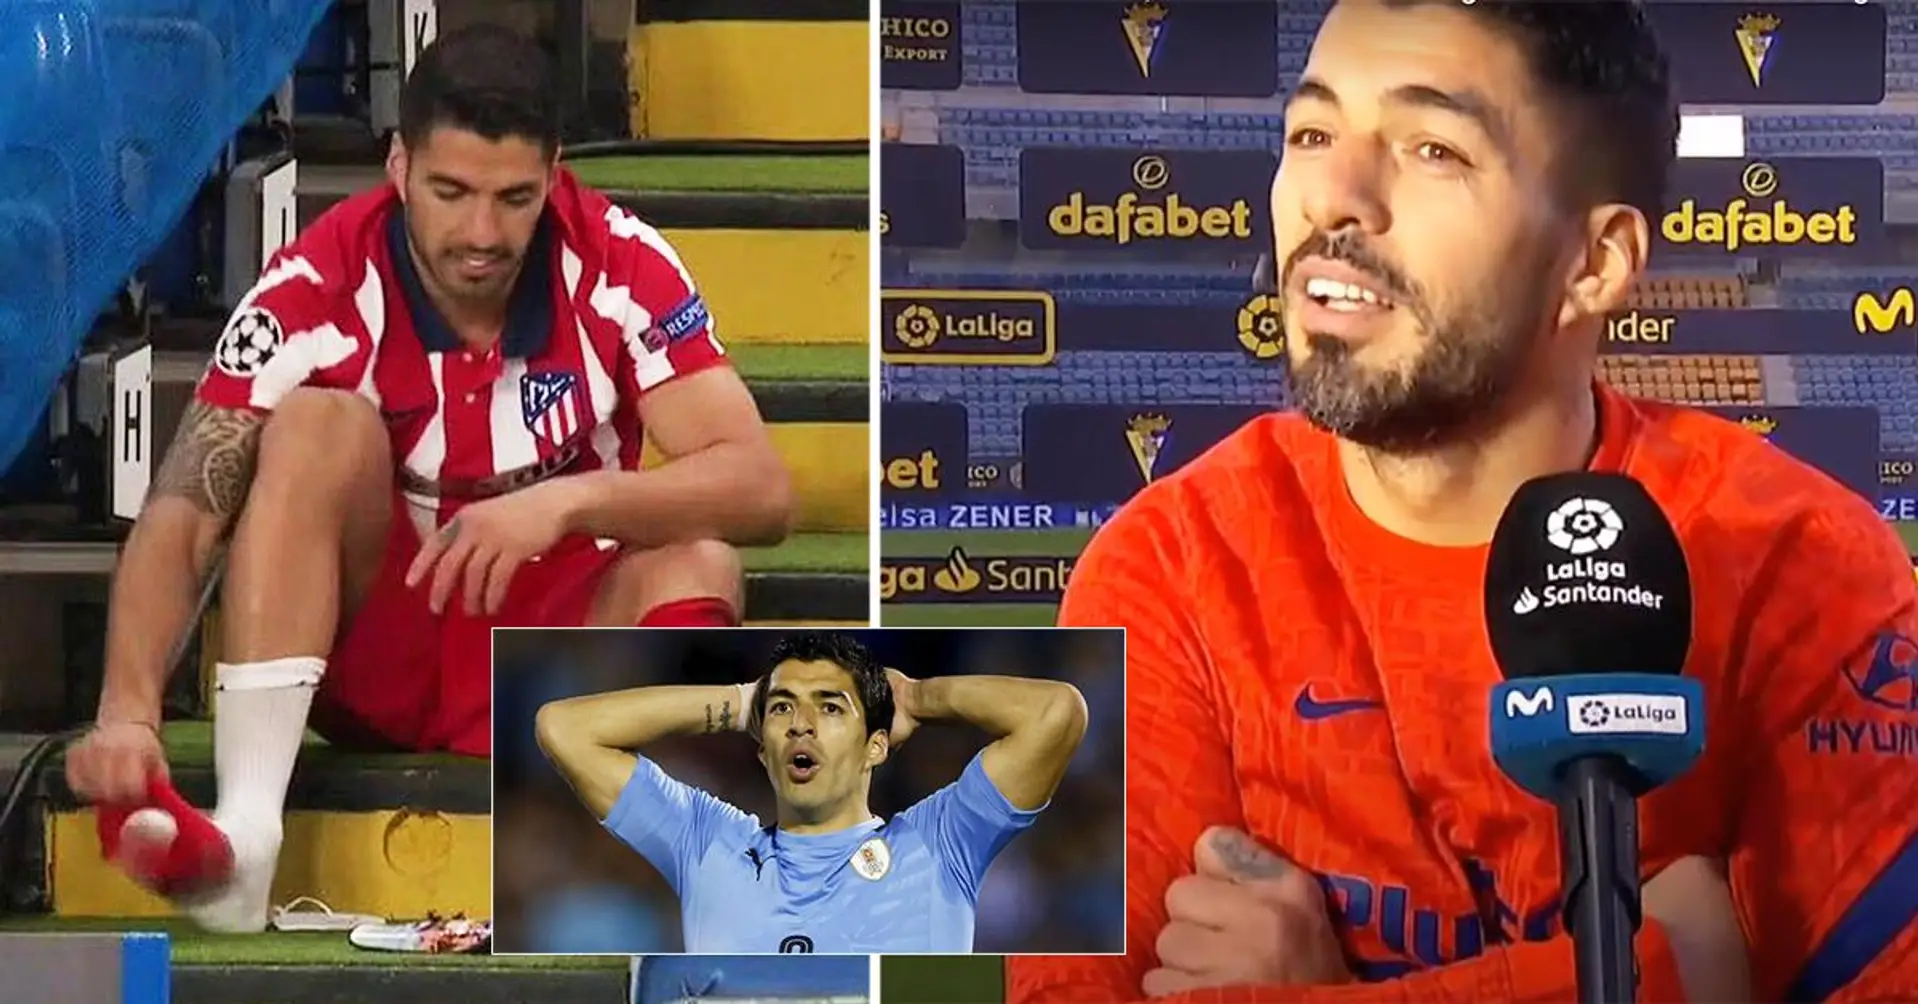 "Er hat mir Probleme bereitet": Luis Suarez nennt besten Verteidiger, gegen den er gespielt hat